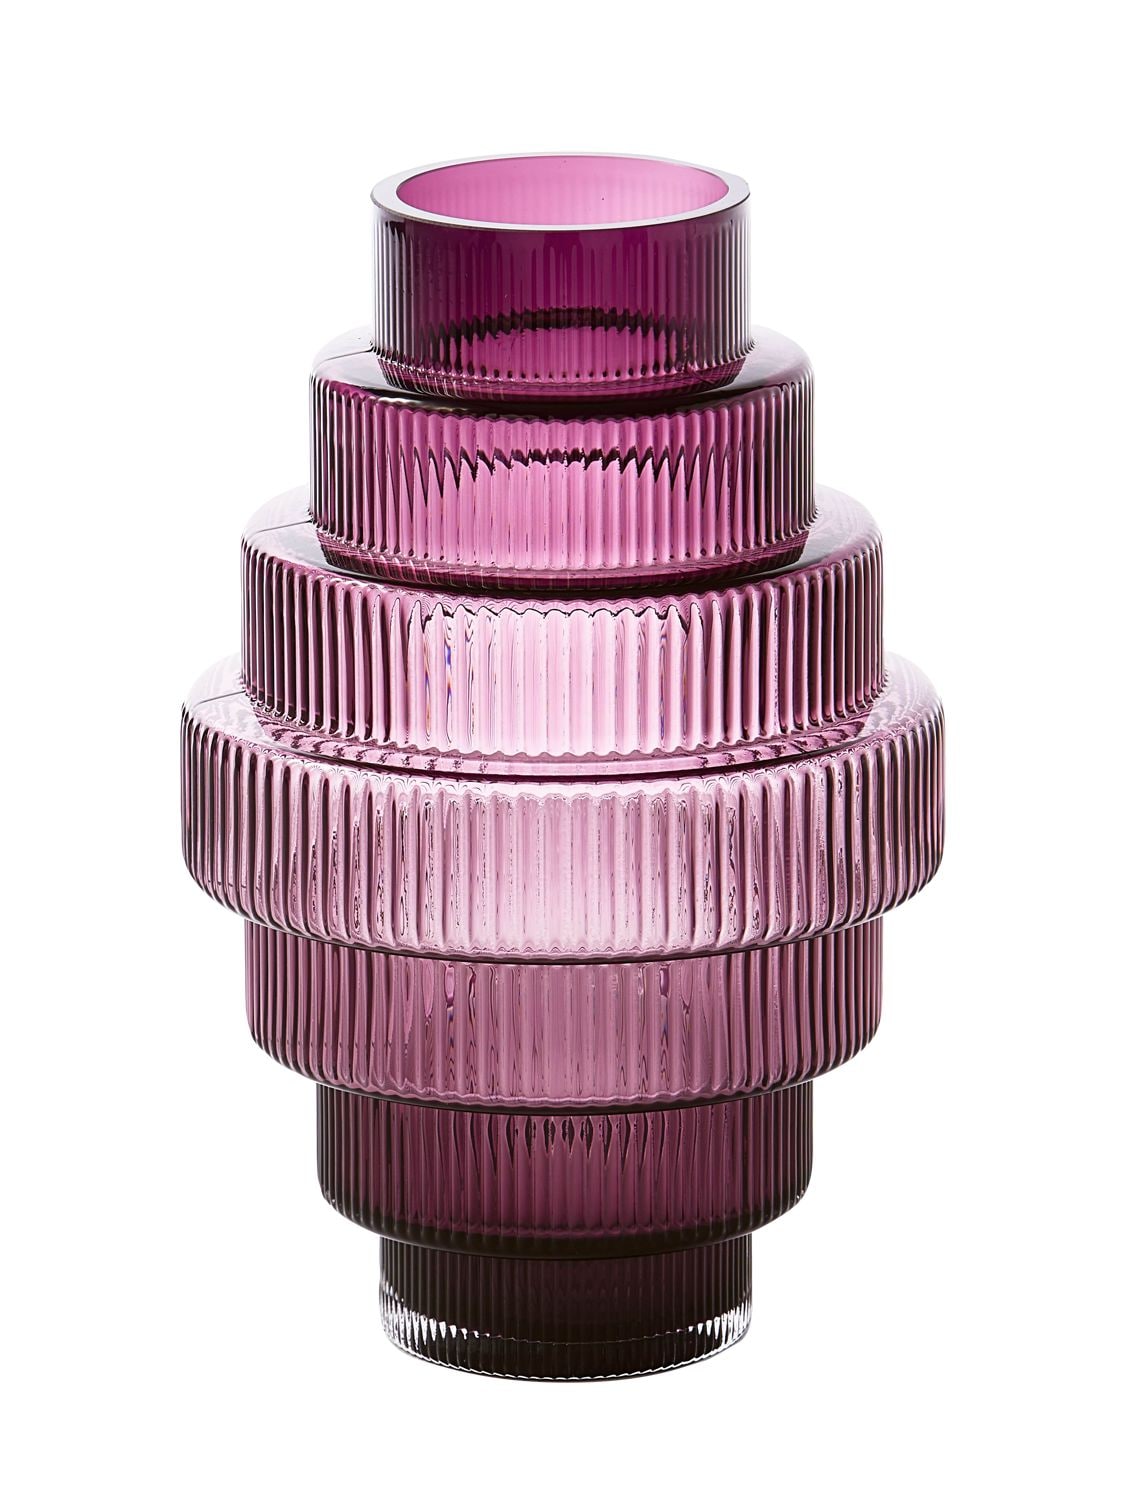 Polspotten Small Steps Vase In Purple